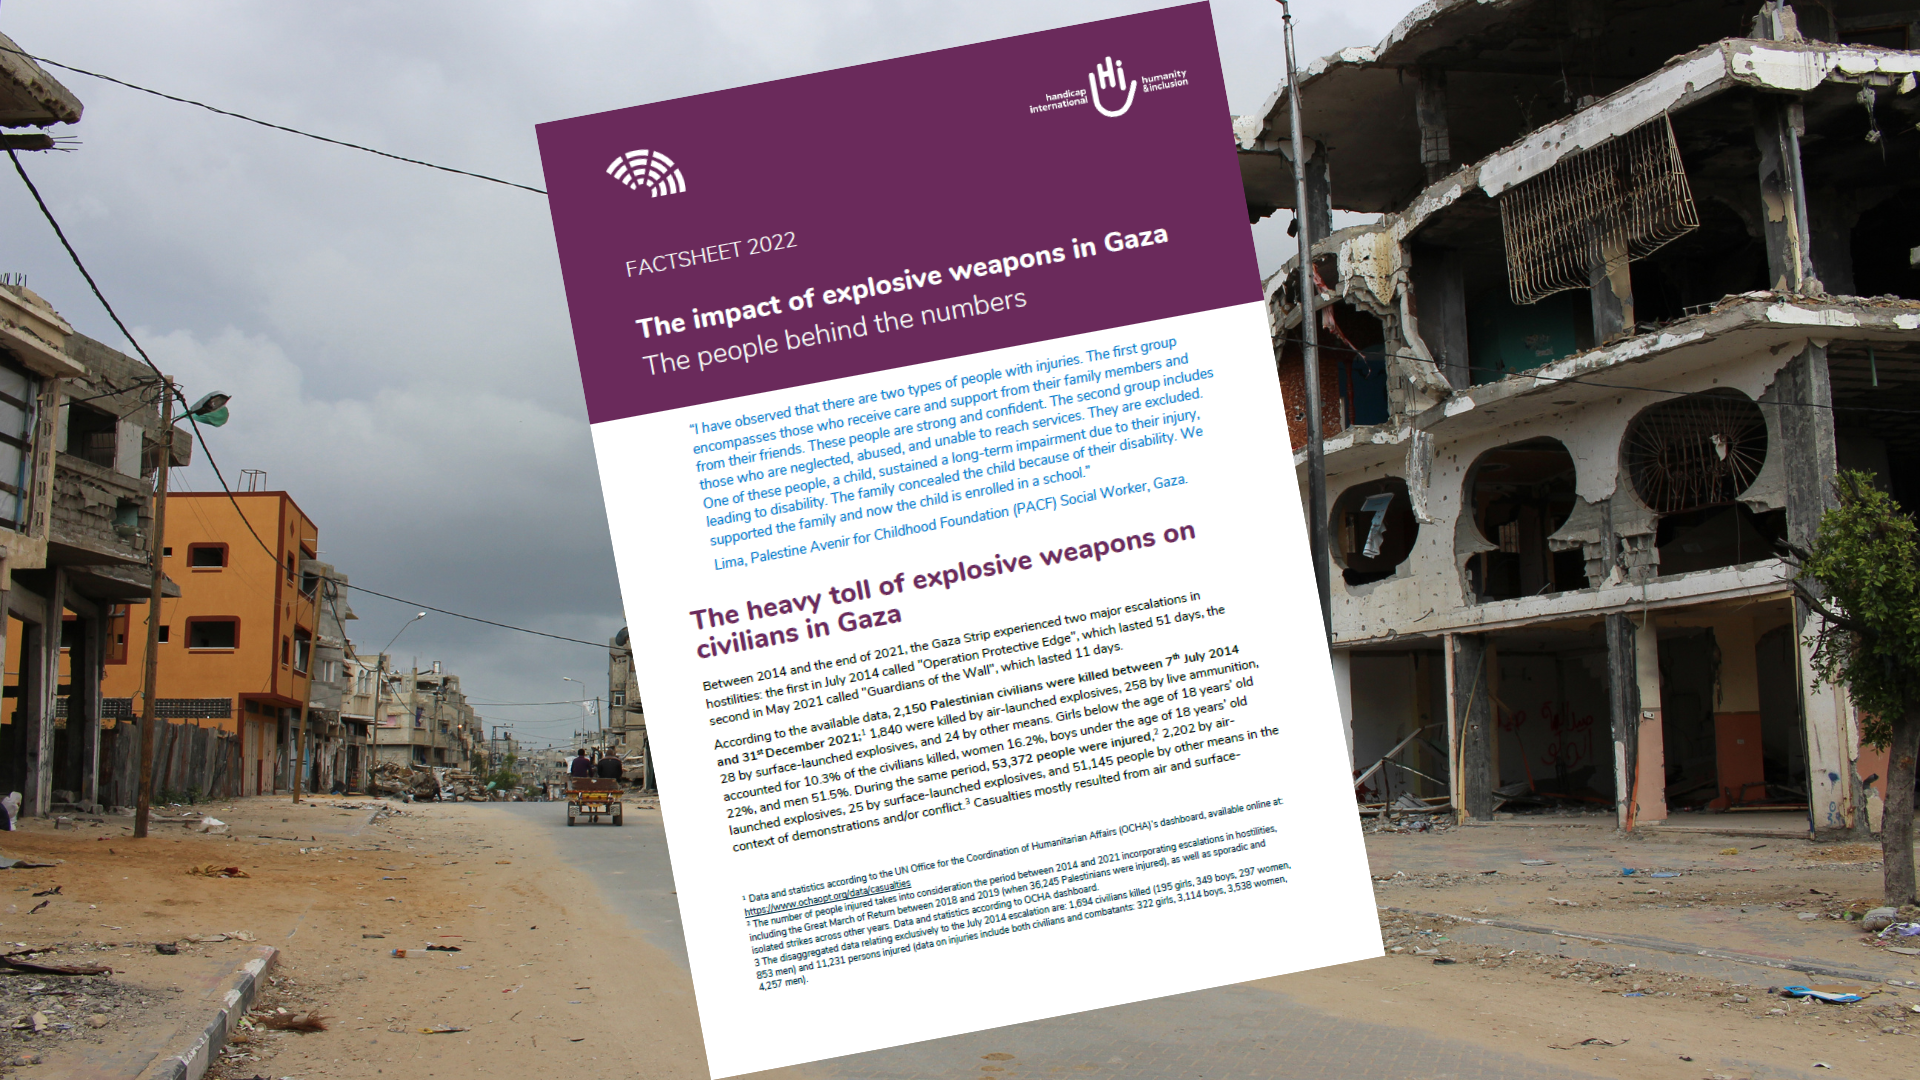 'De impact van explosieve wapens in Gaza - De mensen achter de cijfers'. Factsheet gepubliceerd in februari 2023.